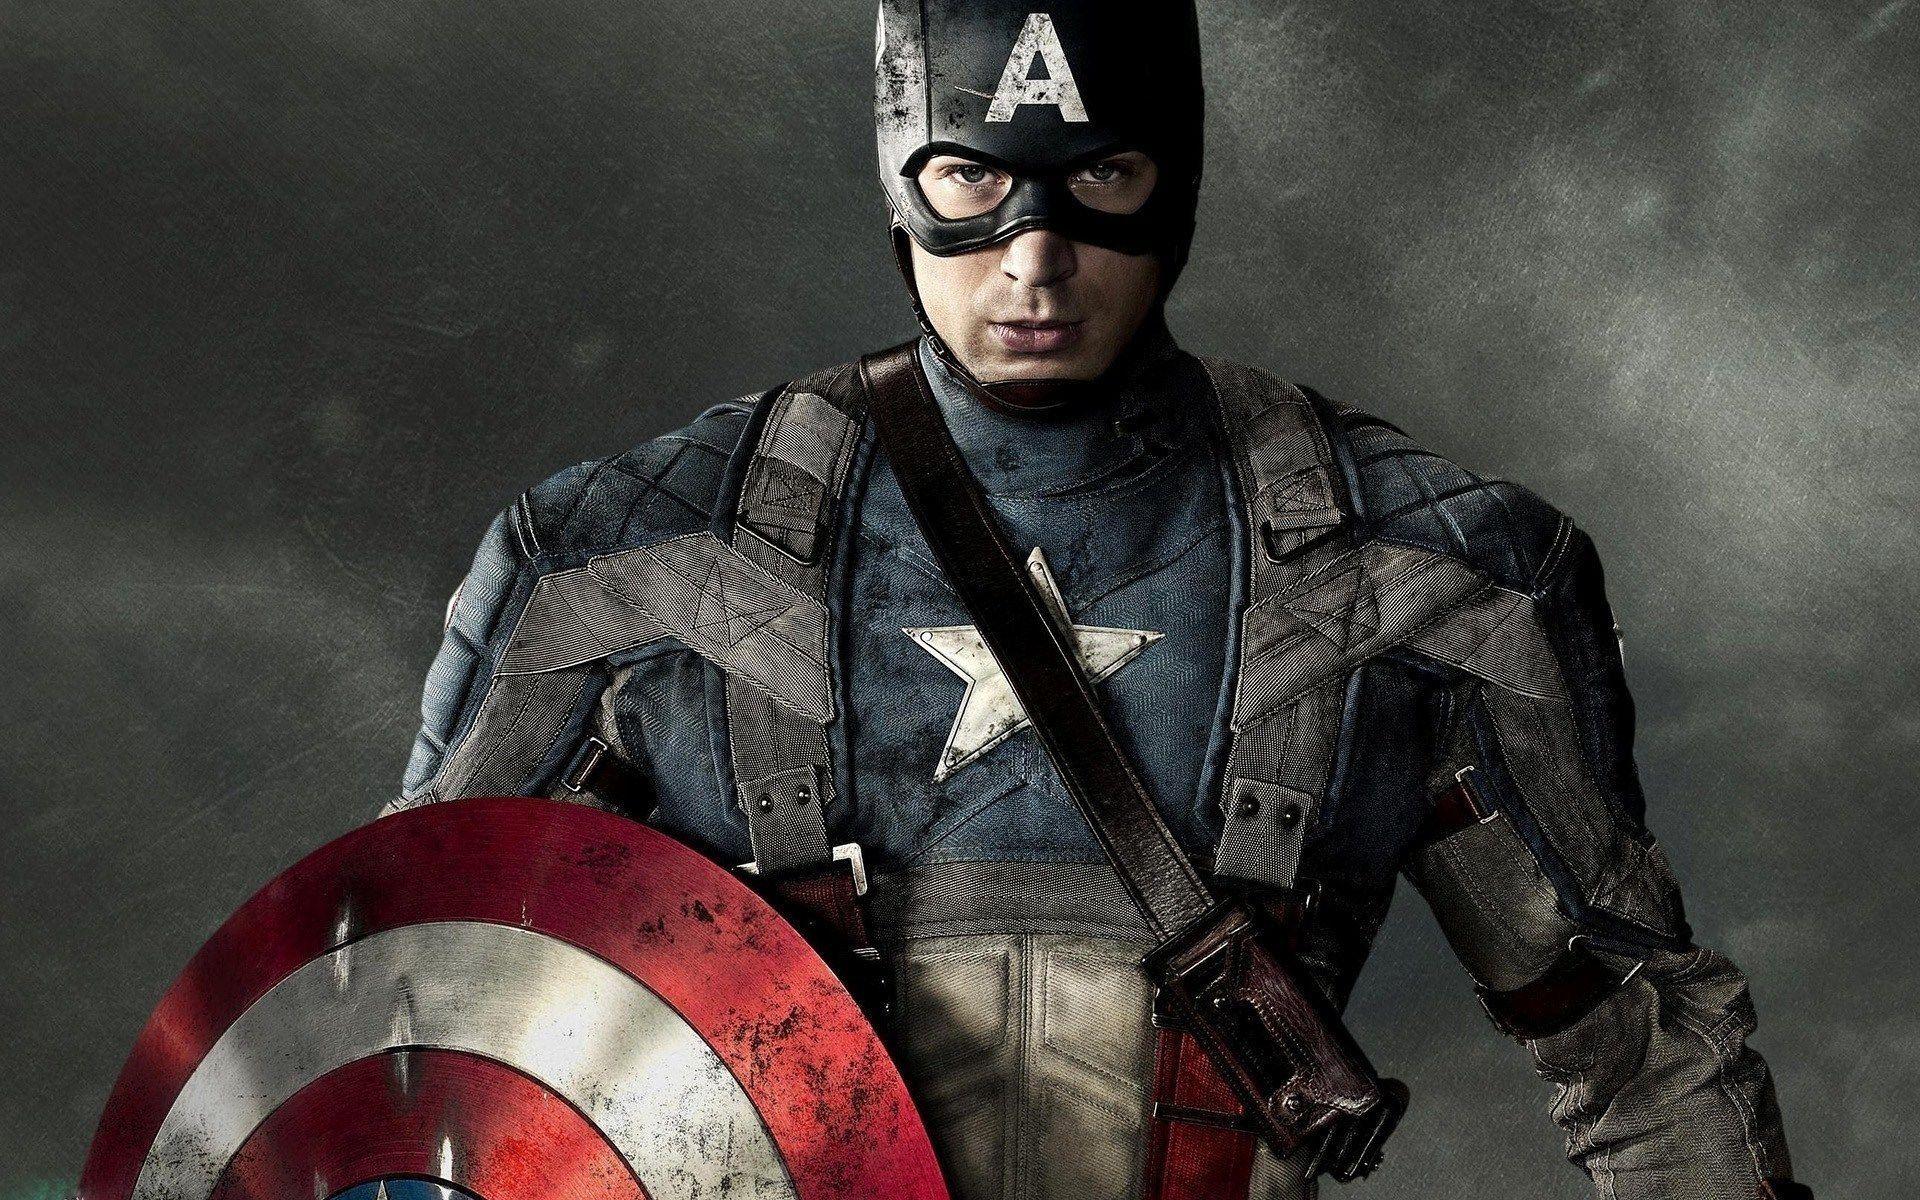 Captain America The First Avenger wallpaper. wallpaper in 2018